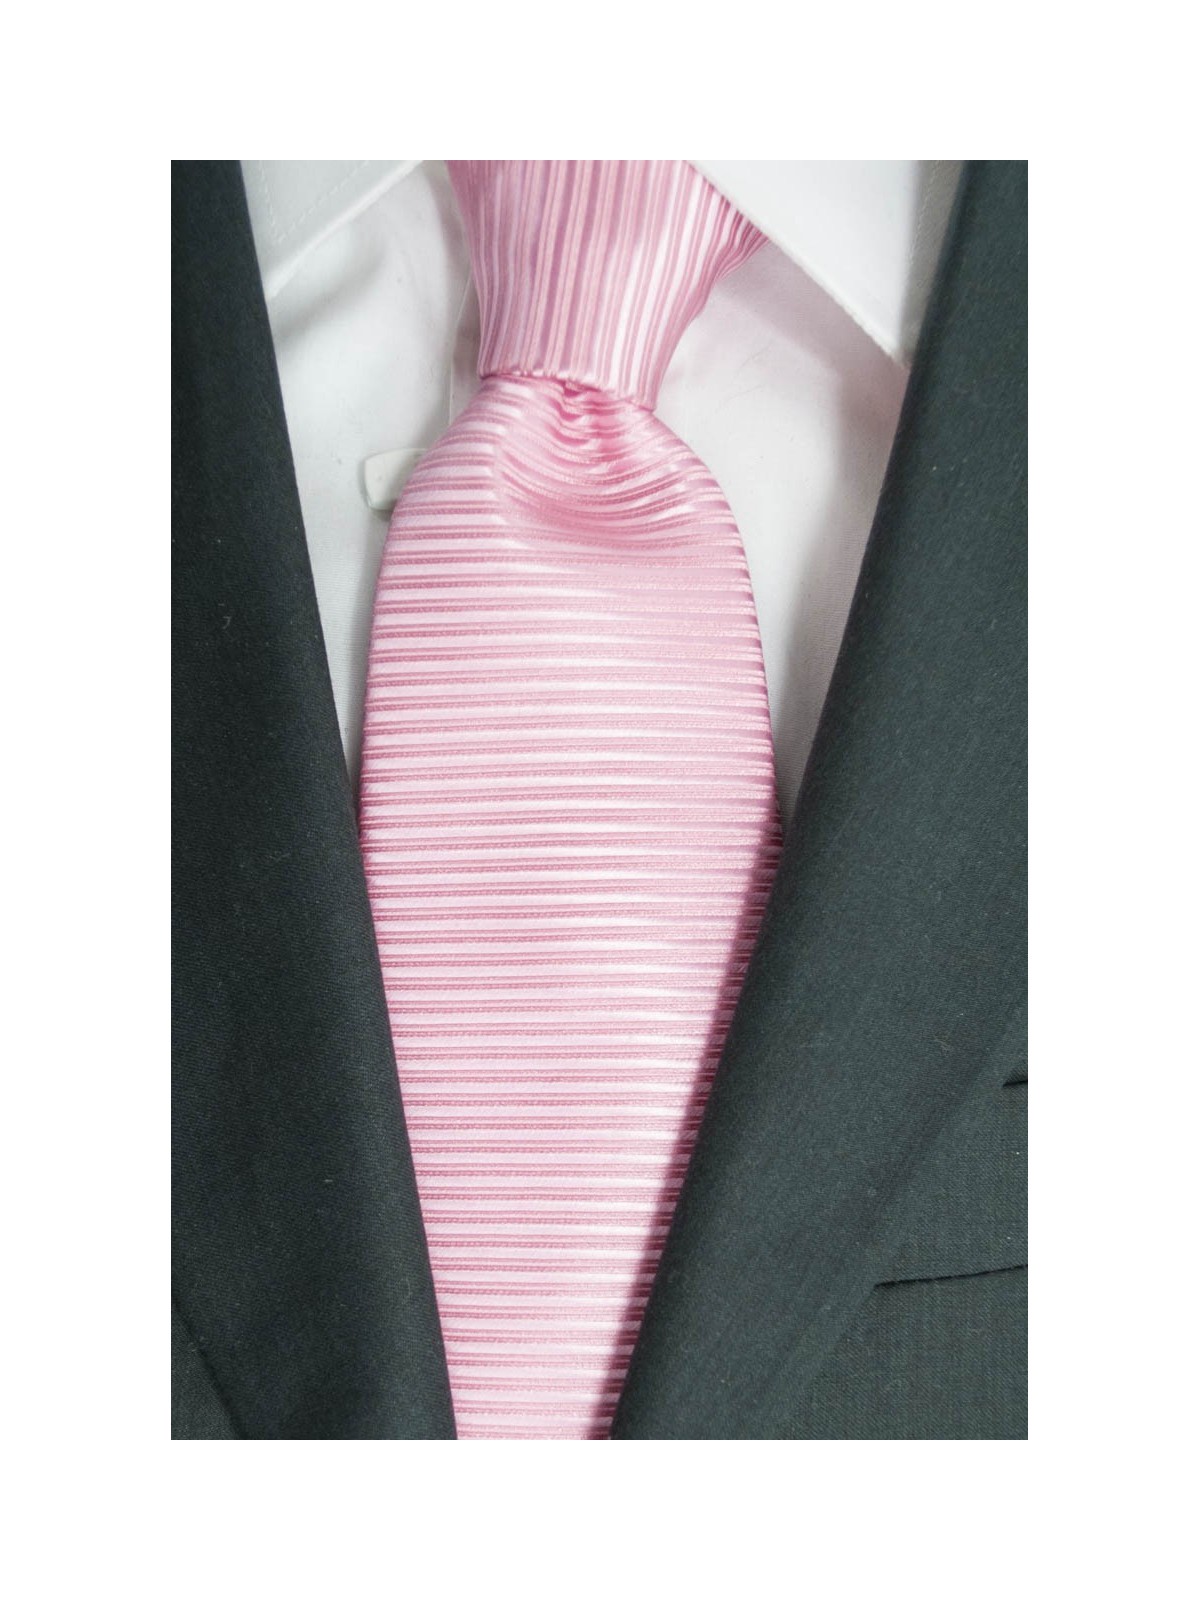 Cravatta Rosa Tintaunita Lavorazione Righe Orizzontale - 100% Pura Seta - Made in Italy